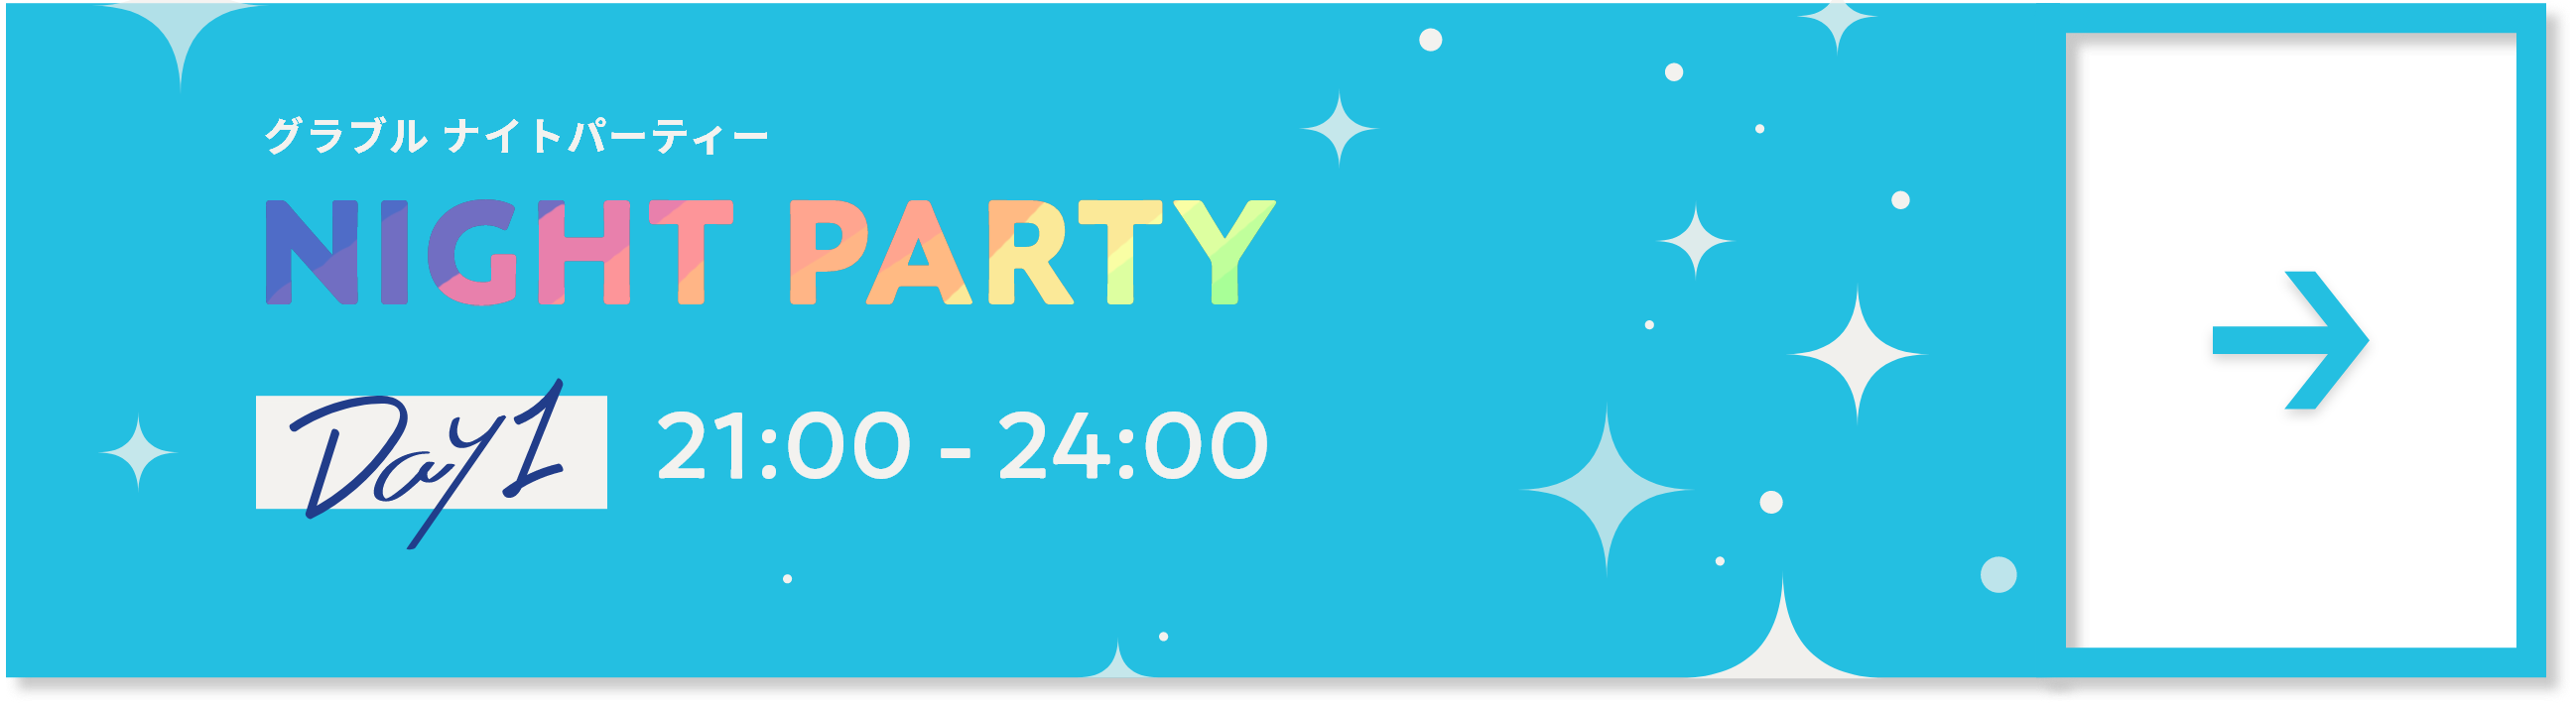 グラブル ナイトパーティー DAY1 21:00 - 24:00